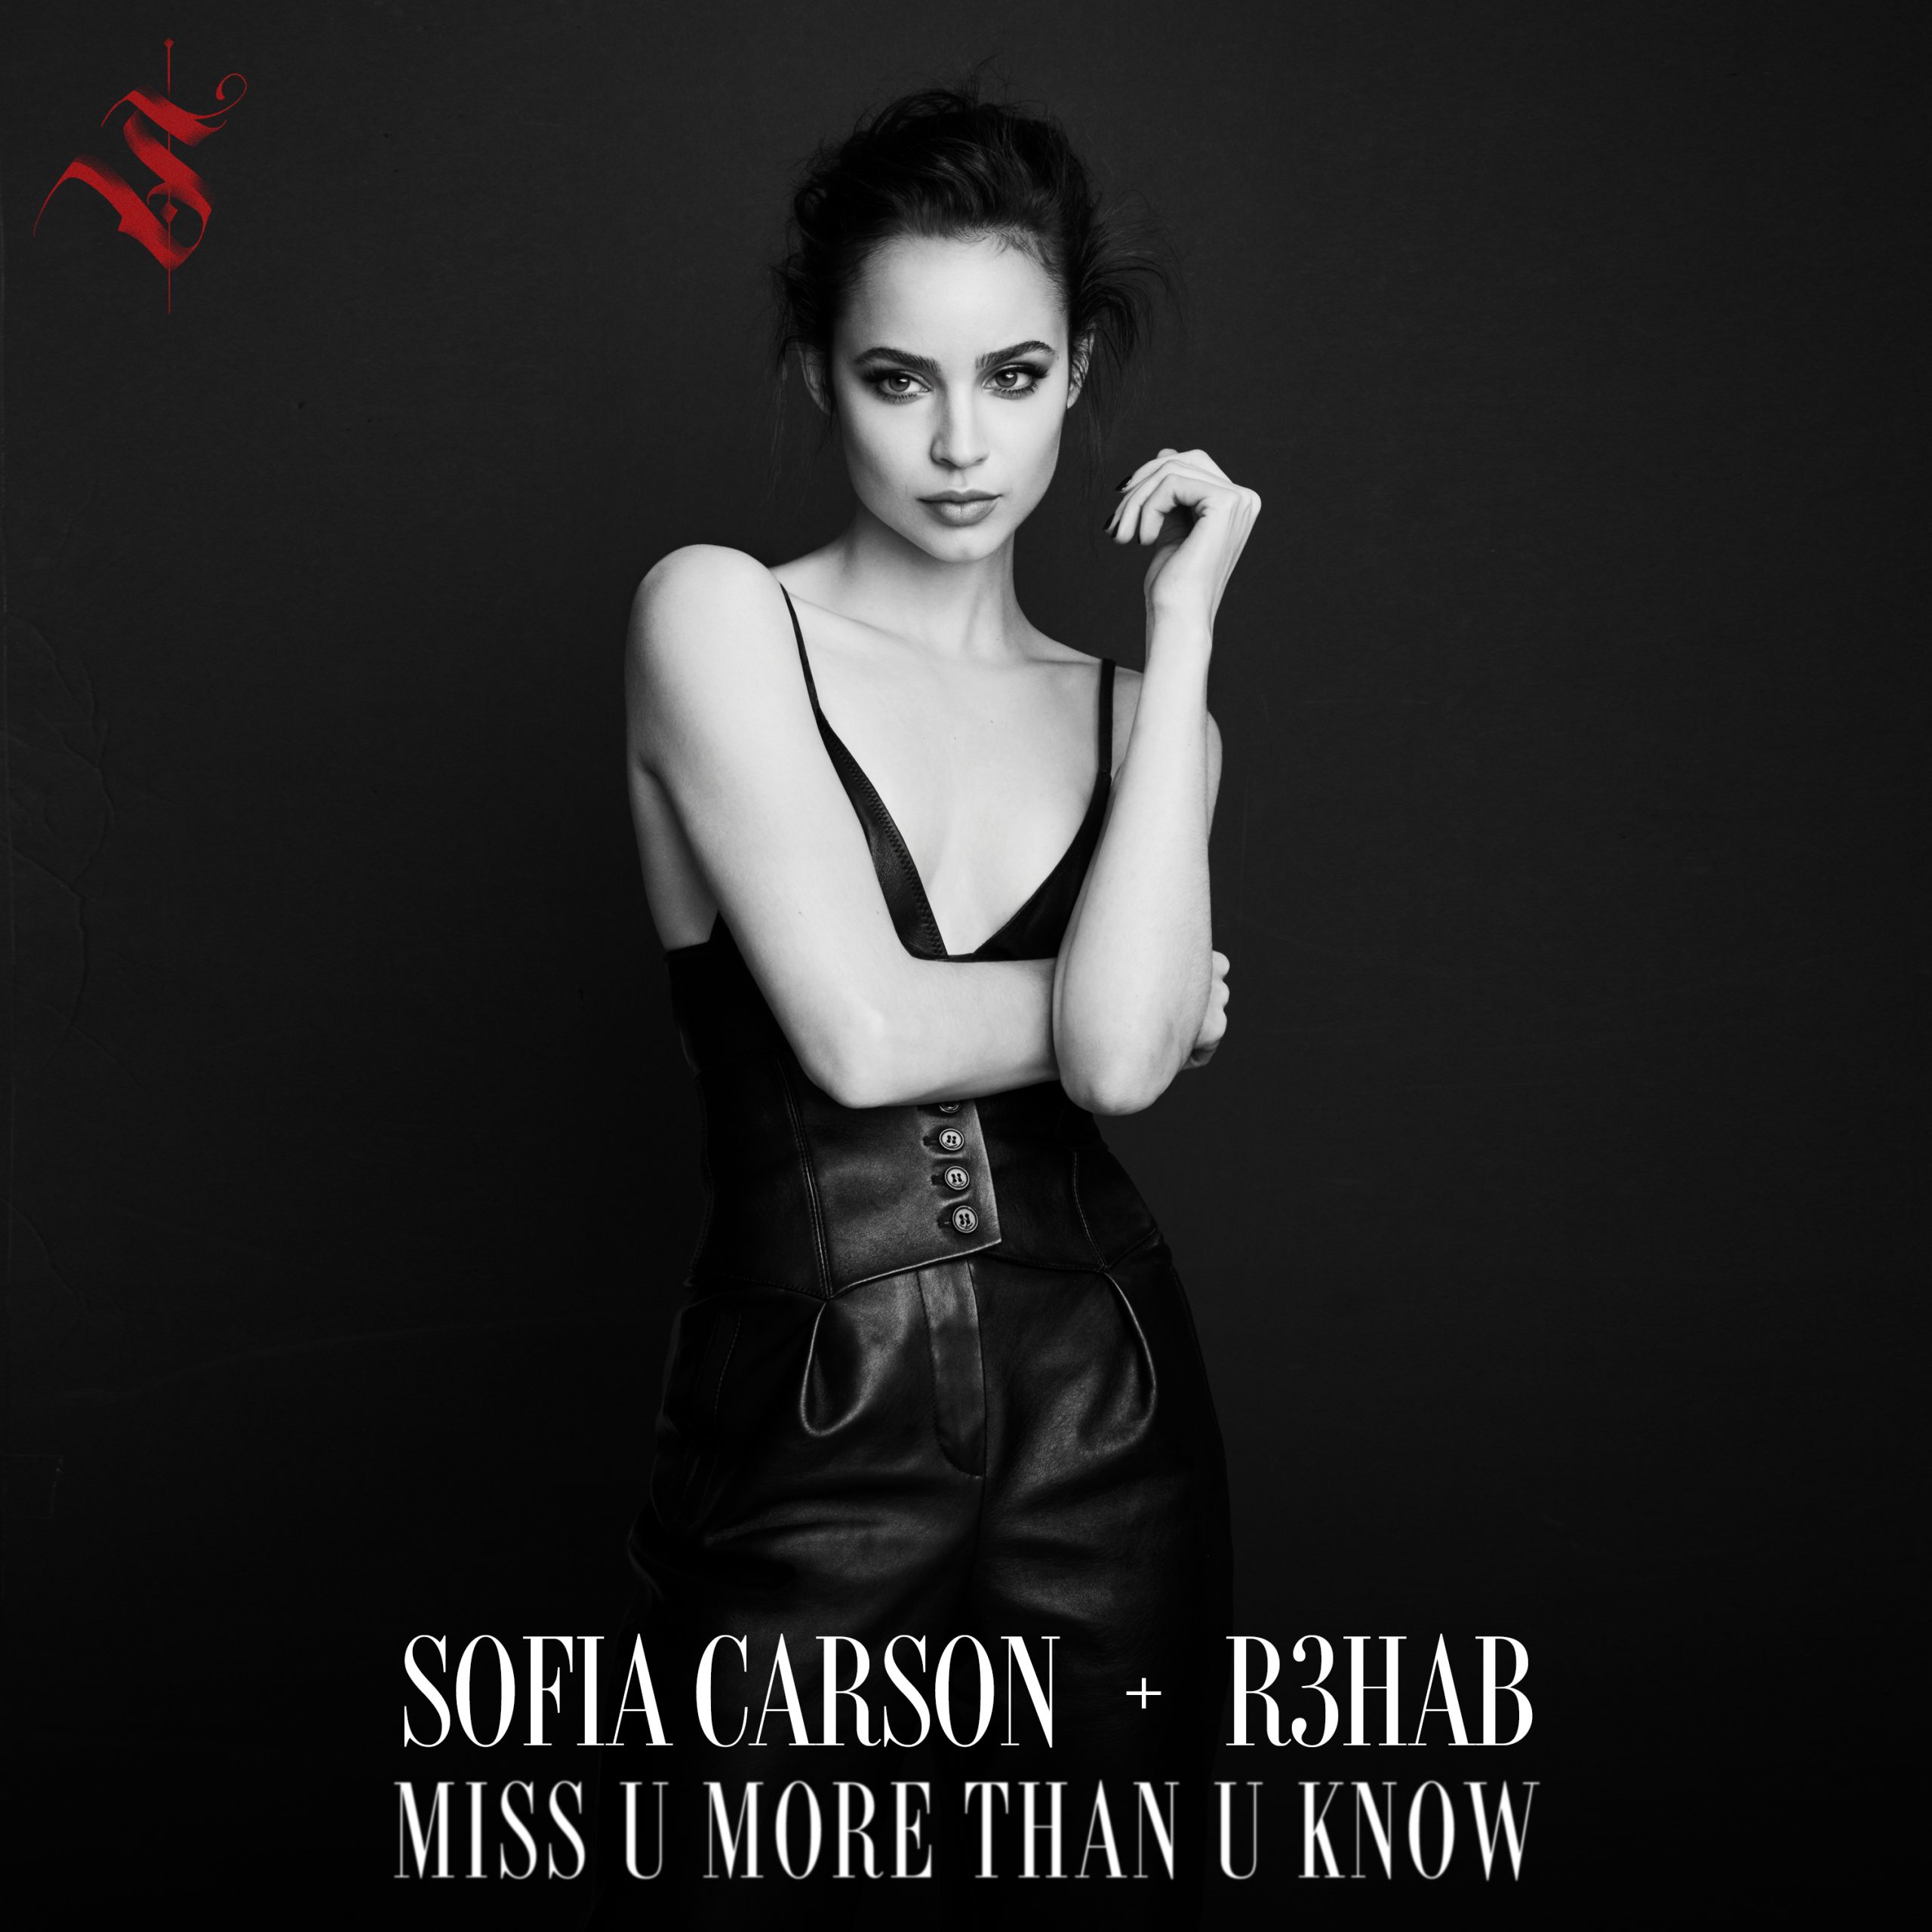 R3hab and Sofia Carson - "Miss U More Than U Know" single artwork